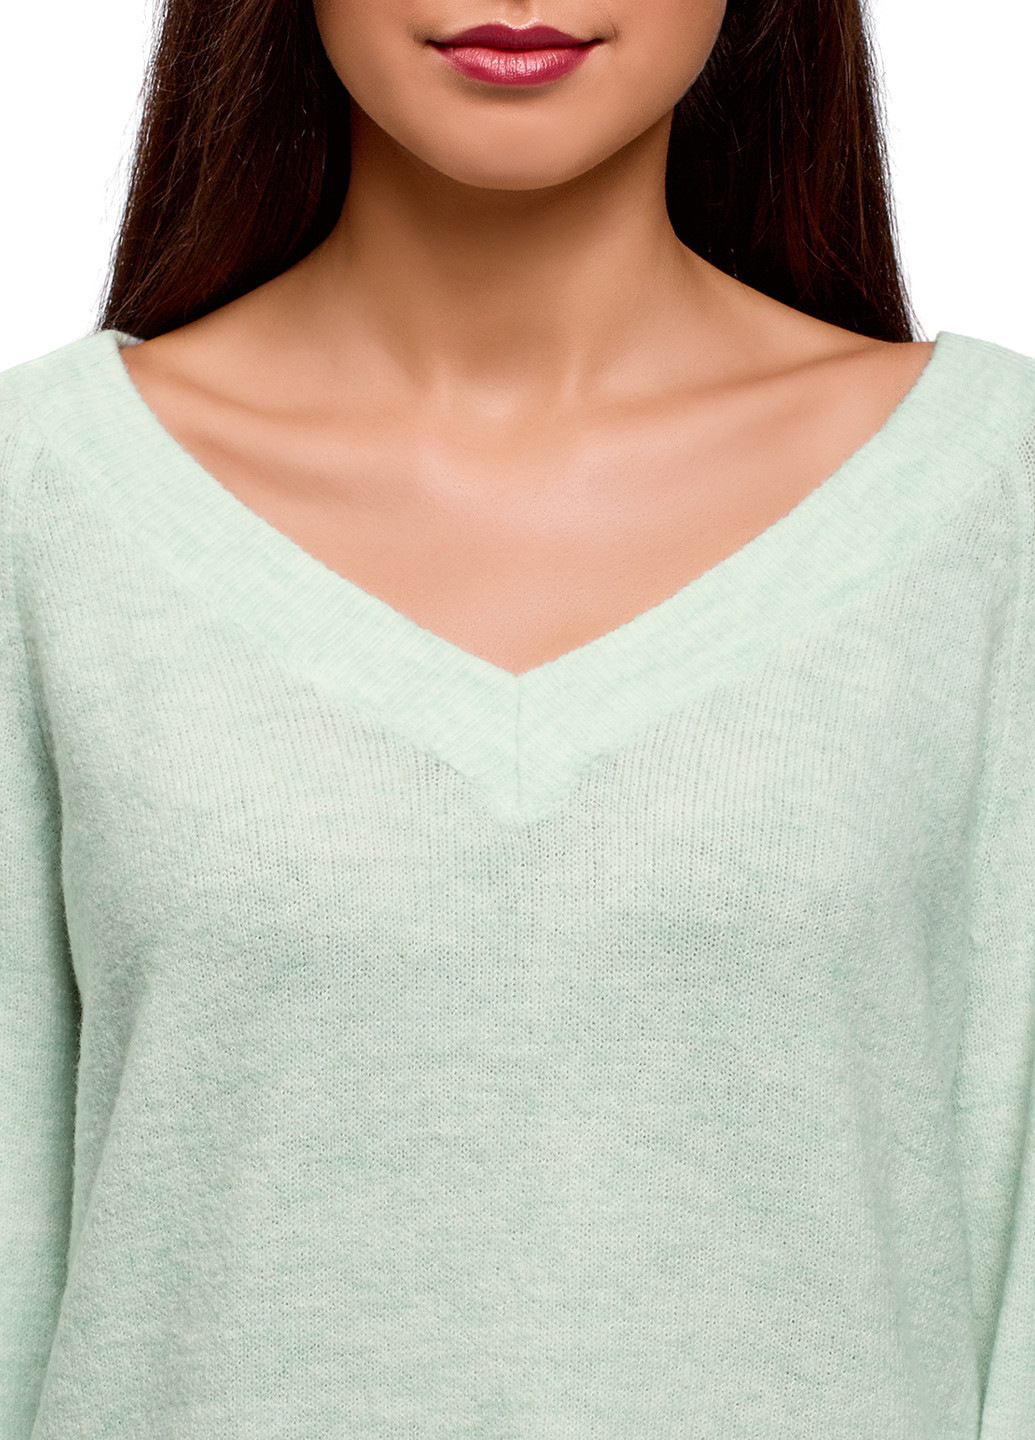 Зелений демісезонний пуловер пуловер Oodji